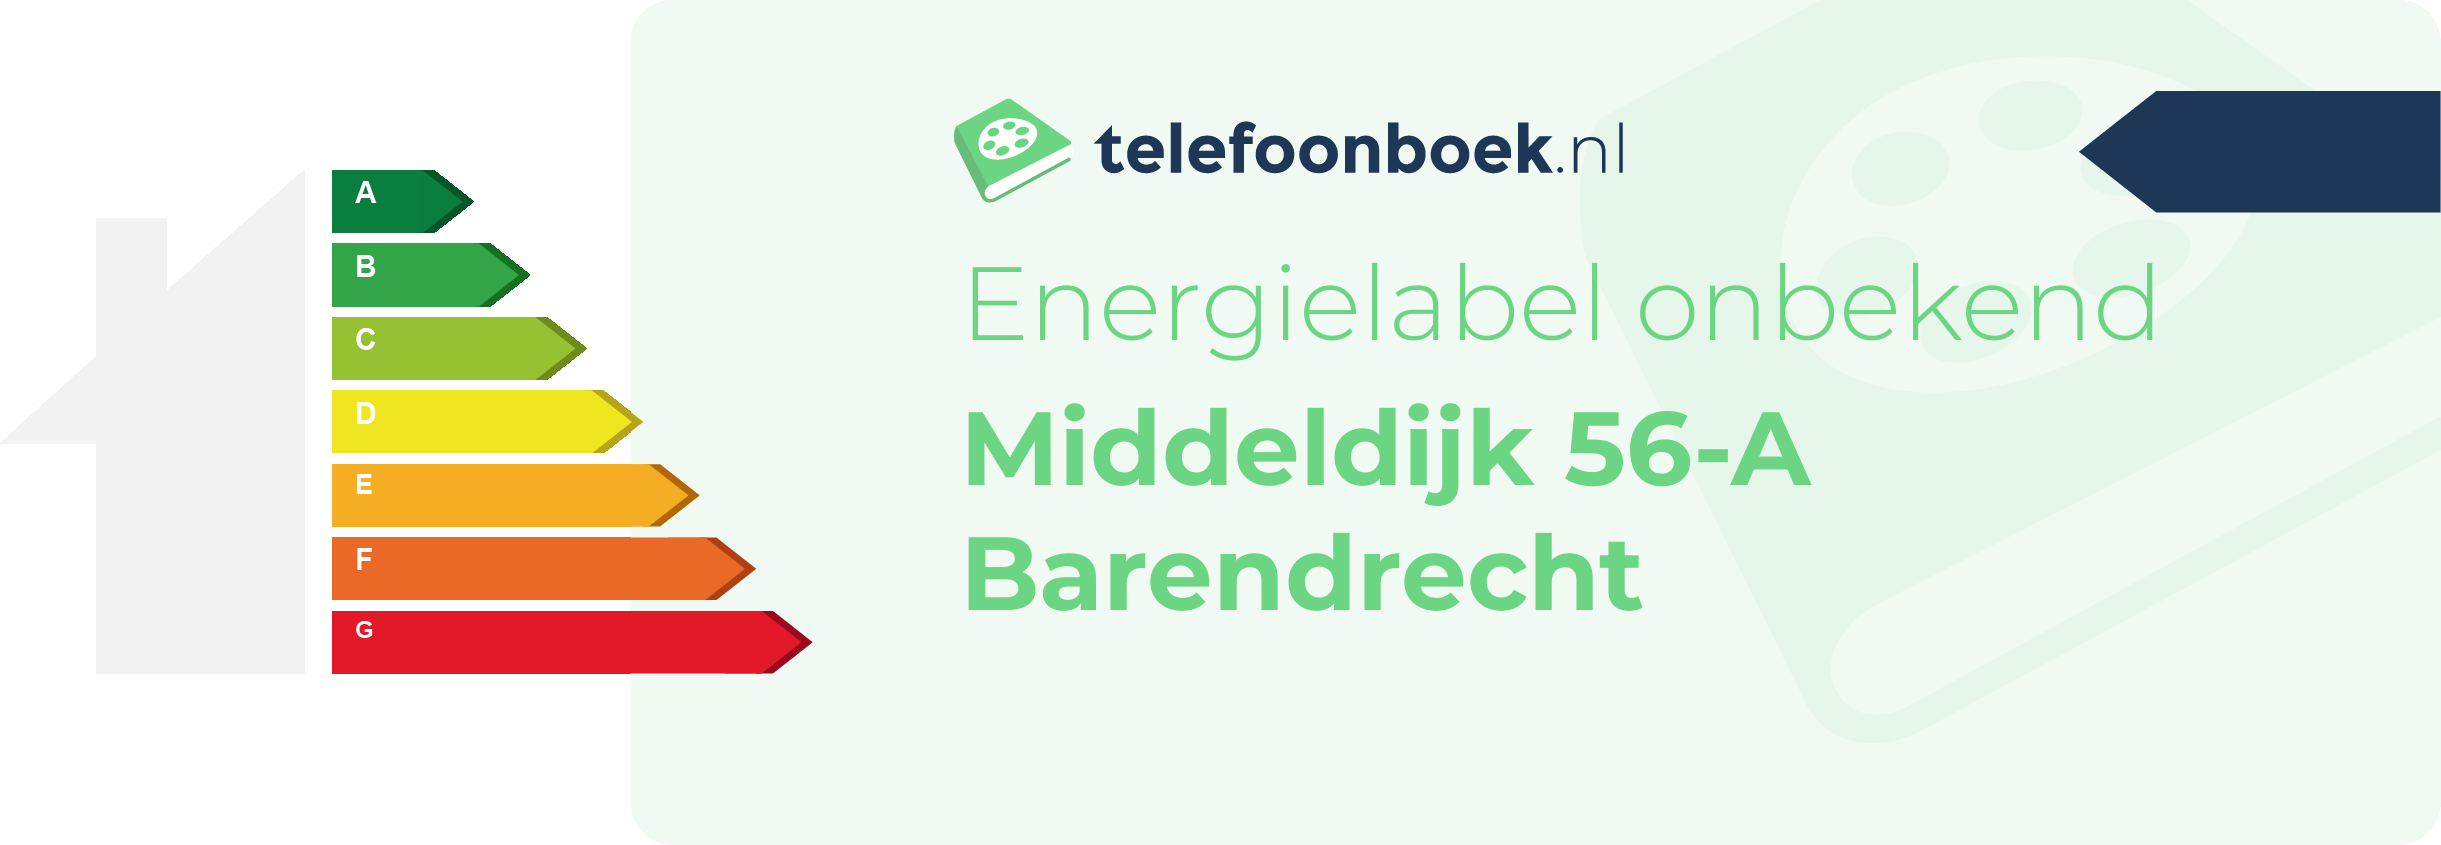 Energielabel Middeldijk 56-A Barendrecht